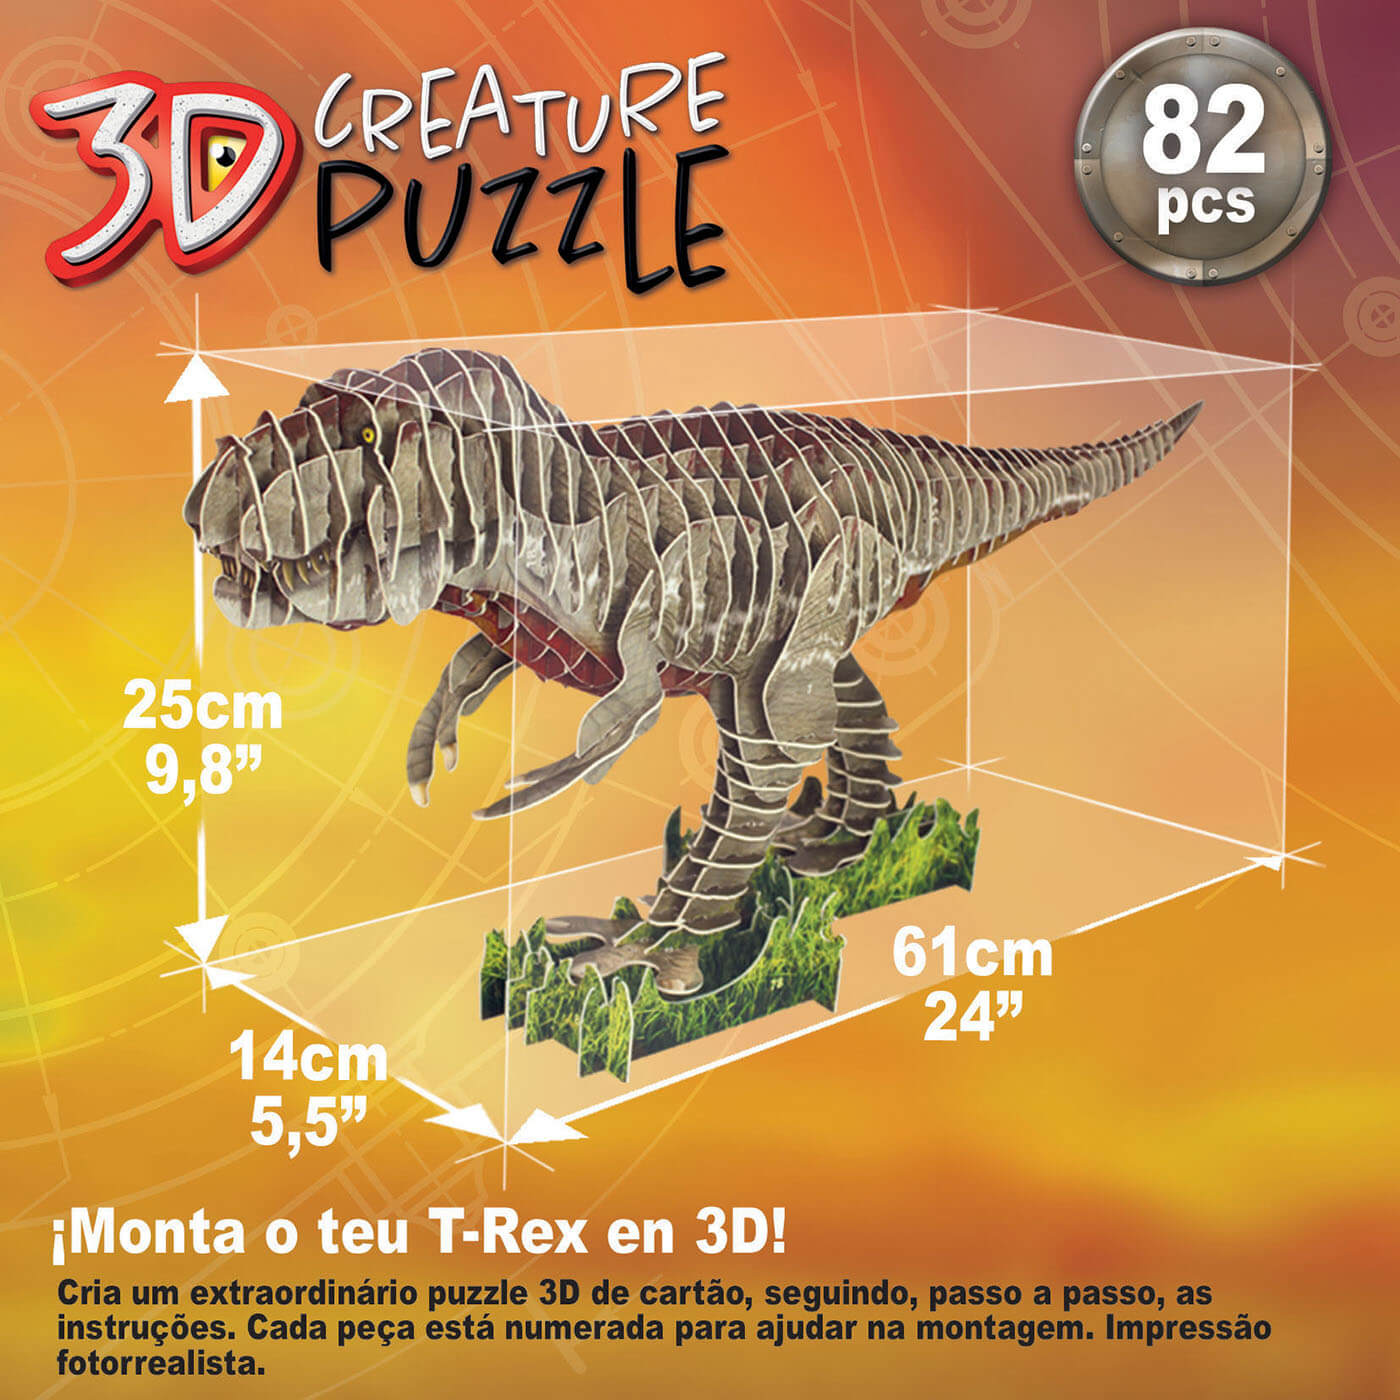 Tyrannosaurus Rex 3D Creature Puzzle ( Educa 19182 ) imagen e